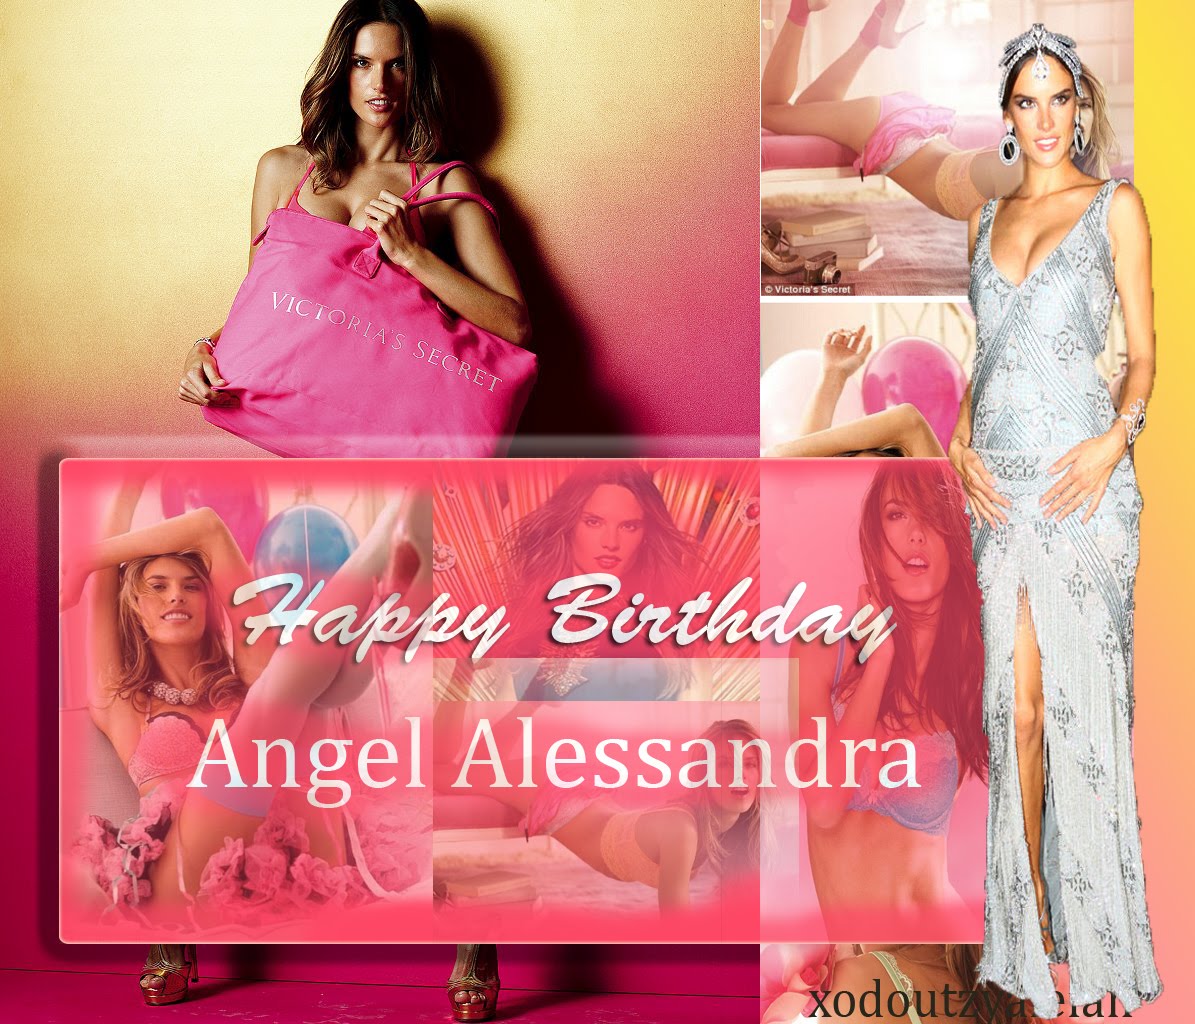 Happy Birthday Angel Alessandra!